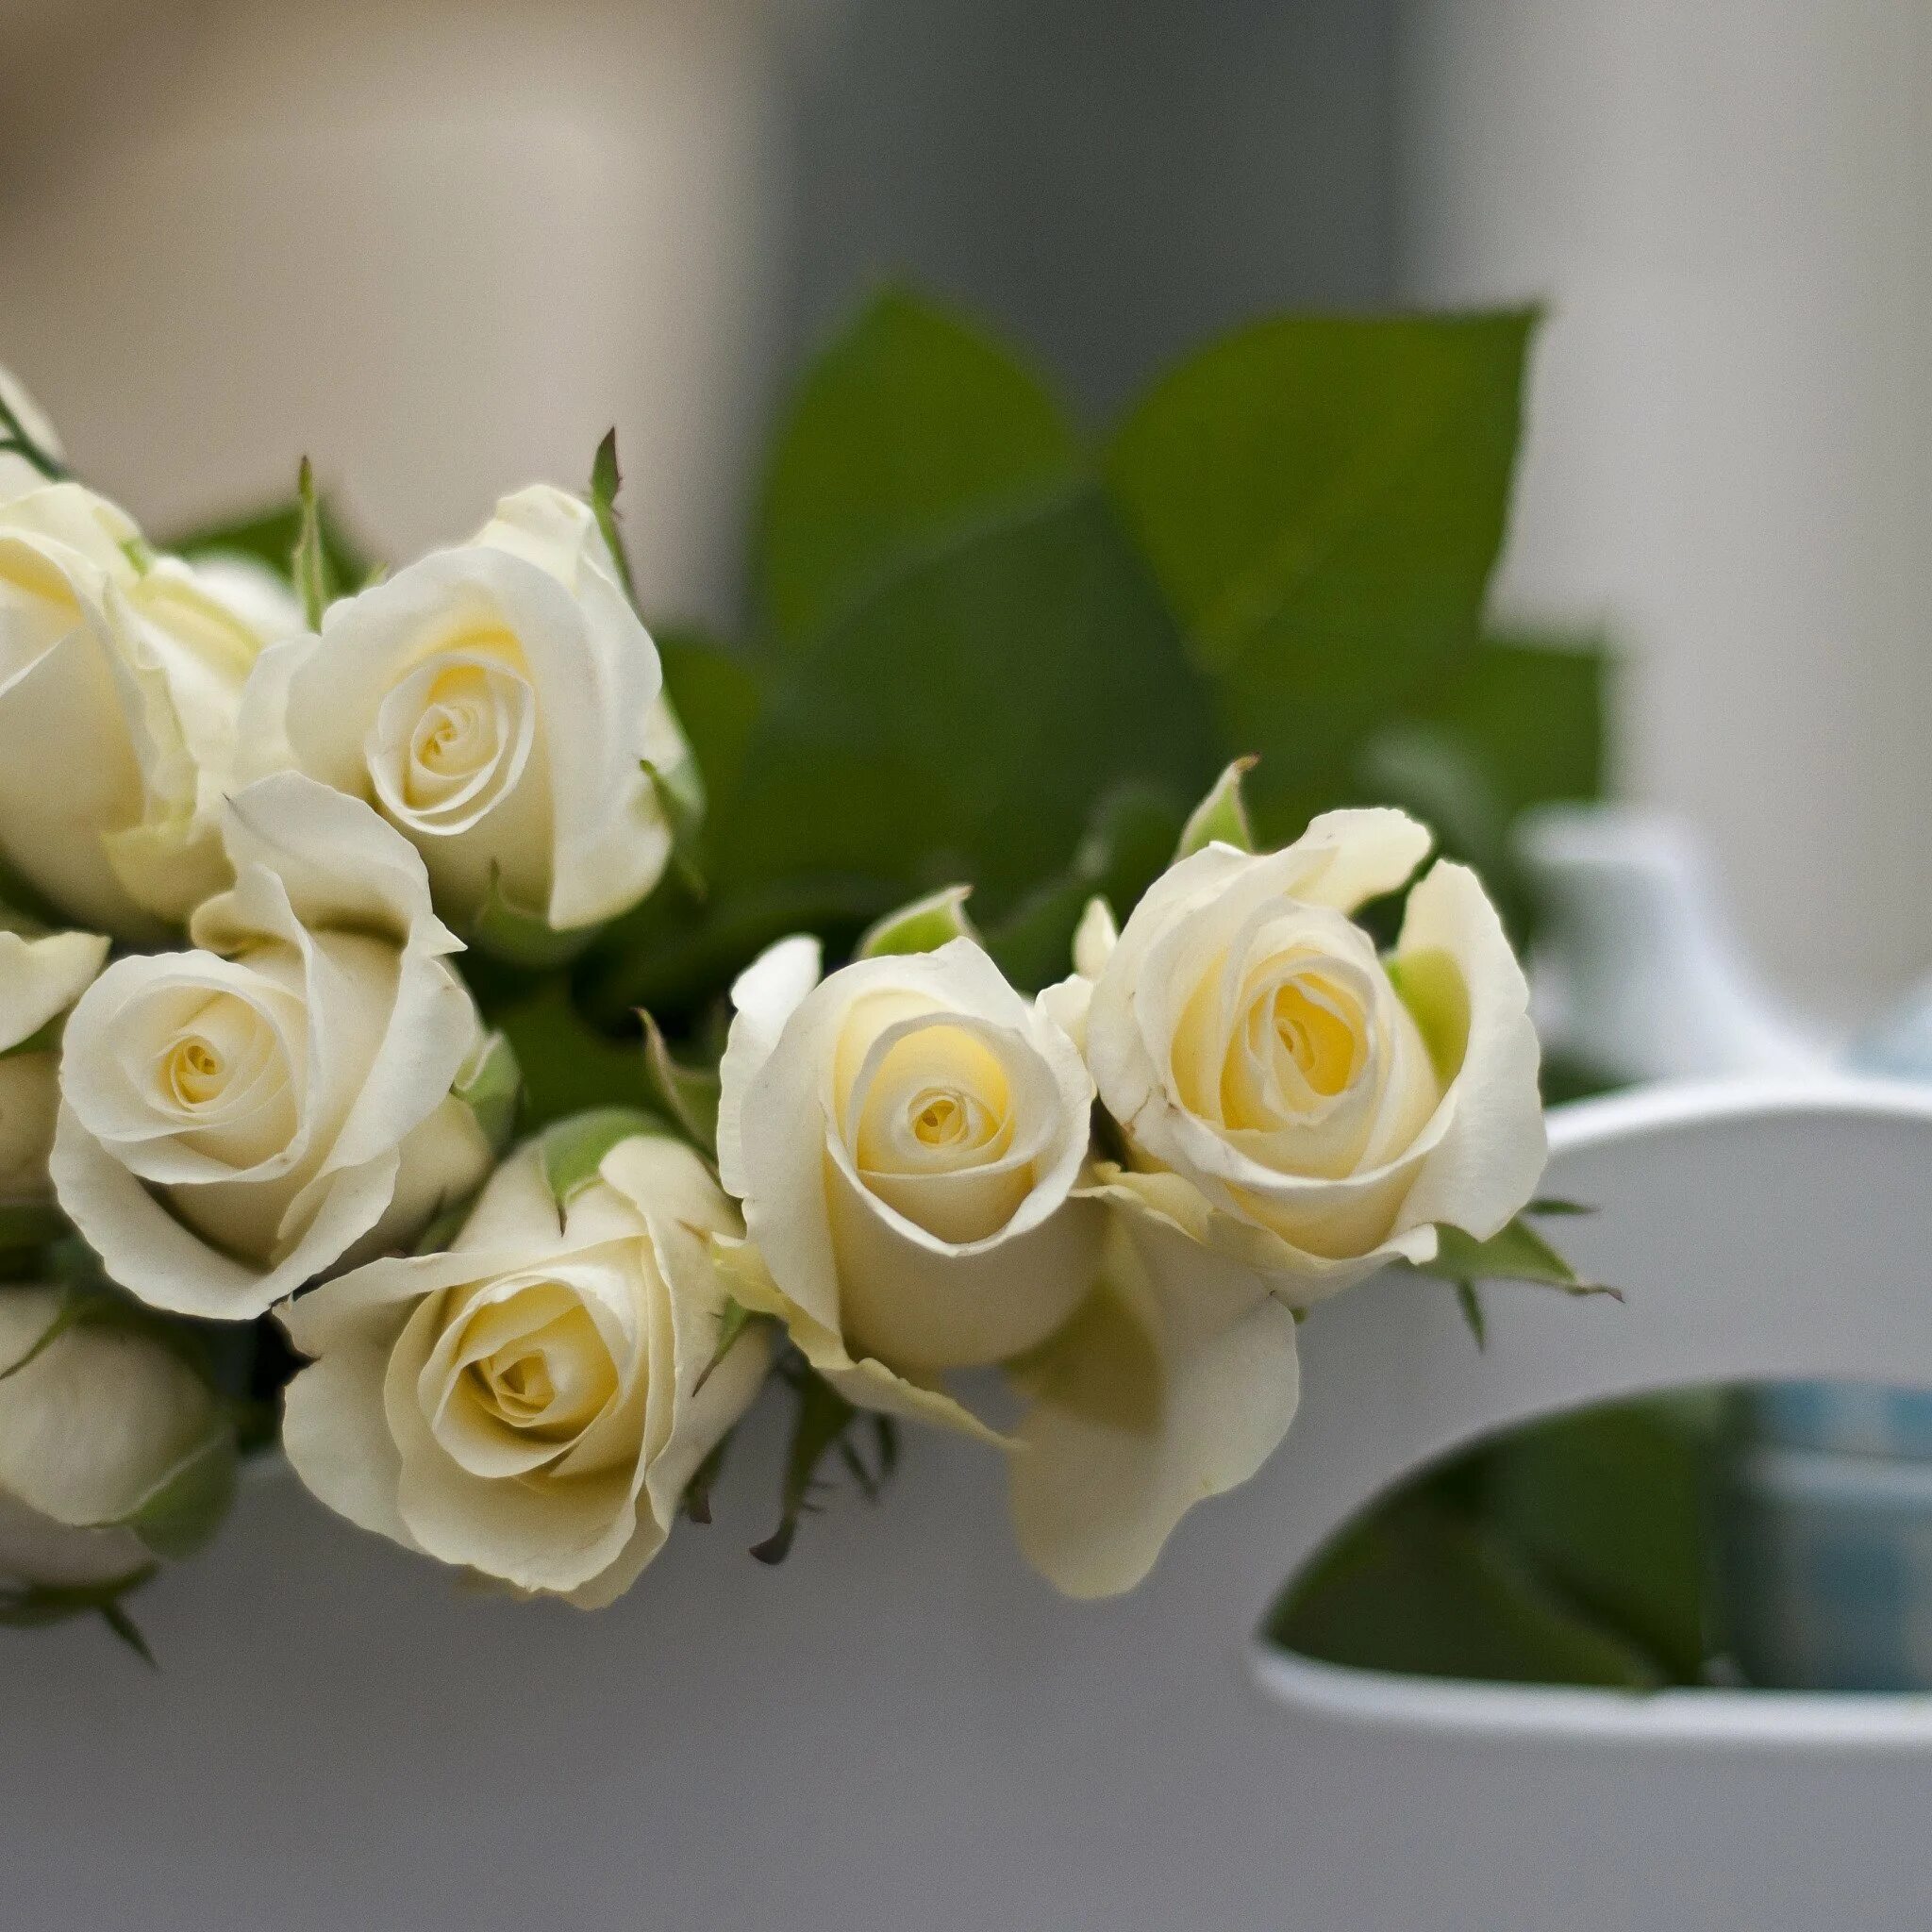 Белые цветы. С добрым утром девушке. Пожелания с добрым утром любимой девушке. Букет белых роз на столе.